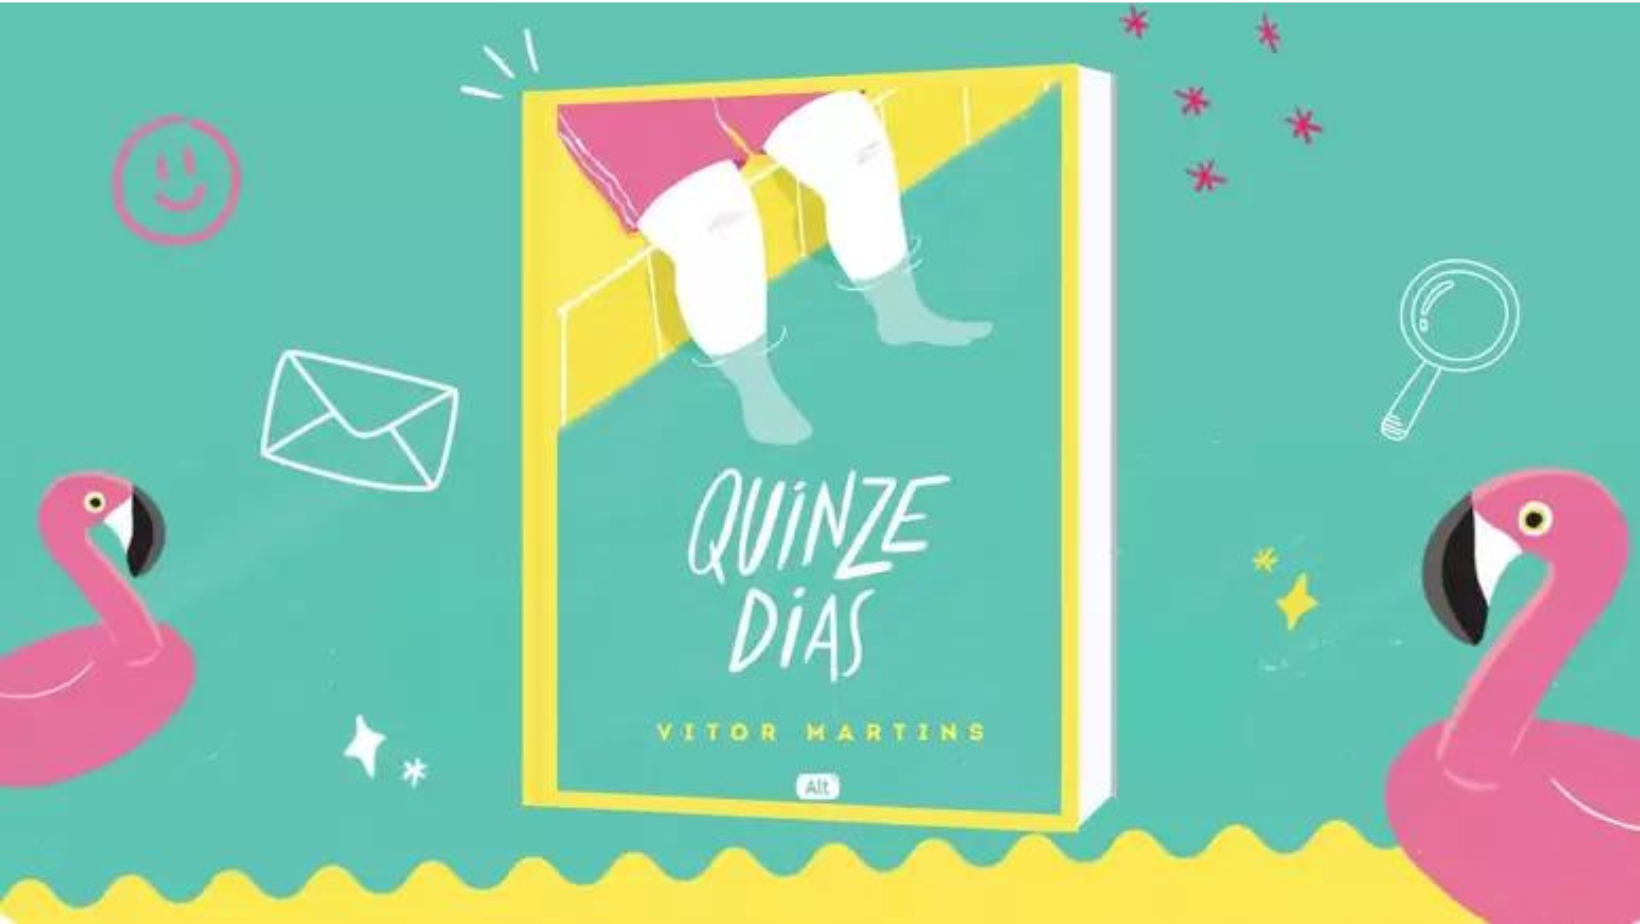 Não perca as audições abertas para "Quinze Dias", de Vitor Martins